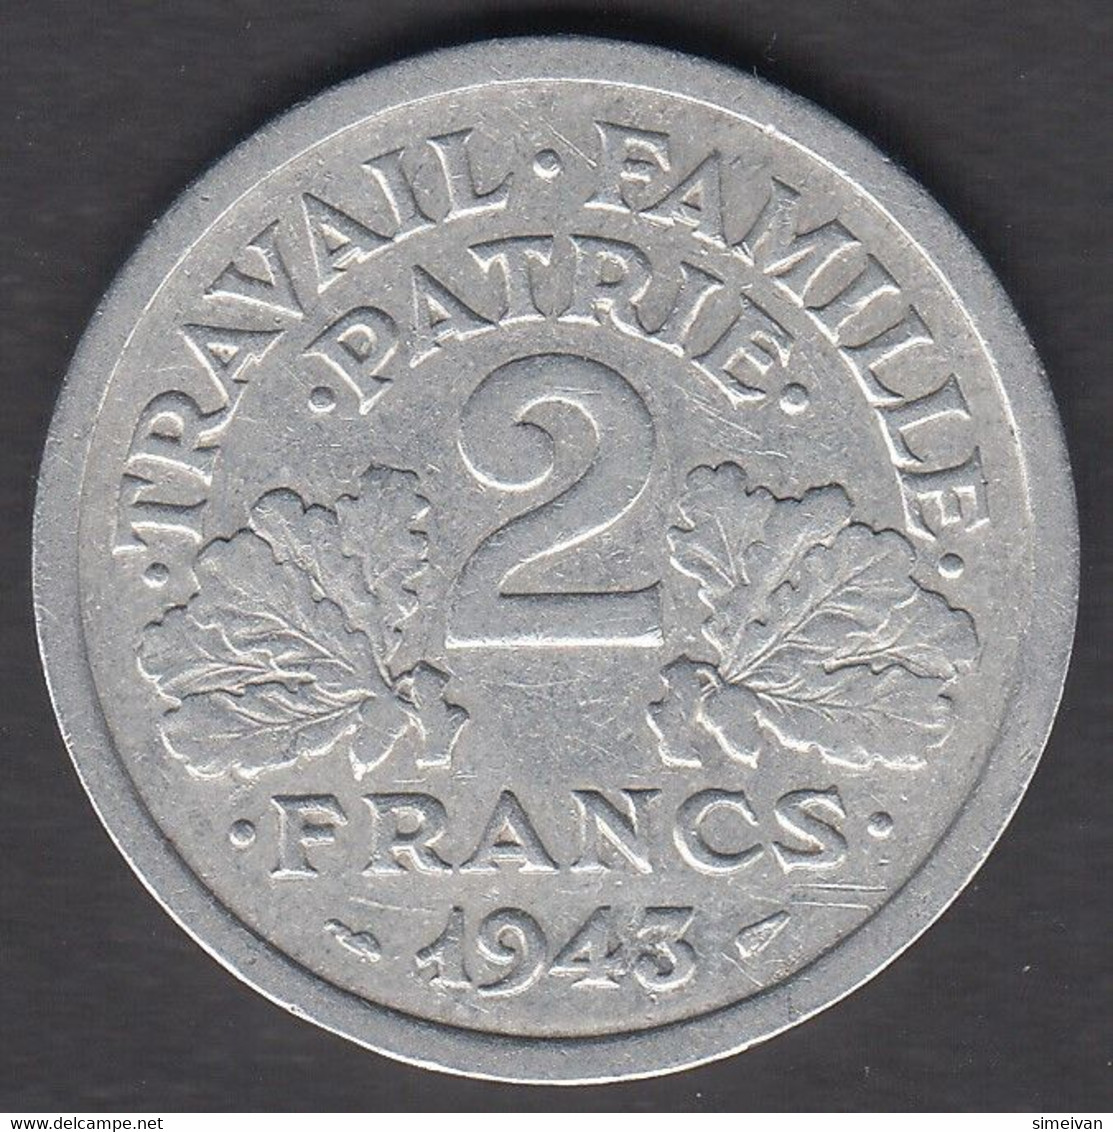 France 2 Francs 1943 Frankreich #1884 - 2 Francs